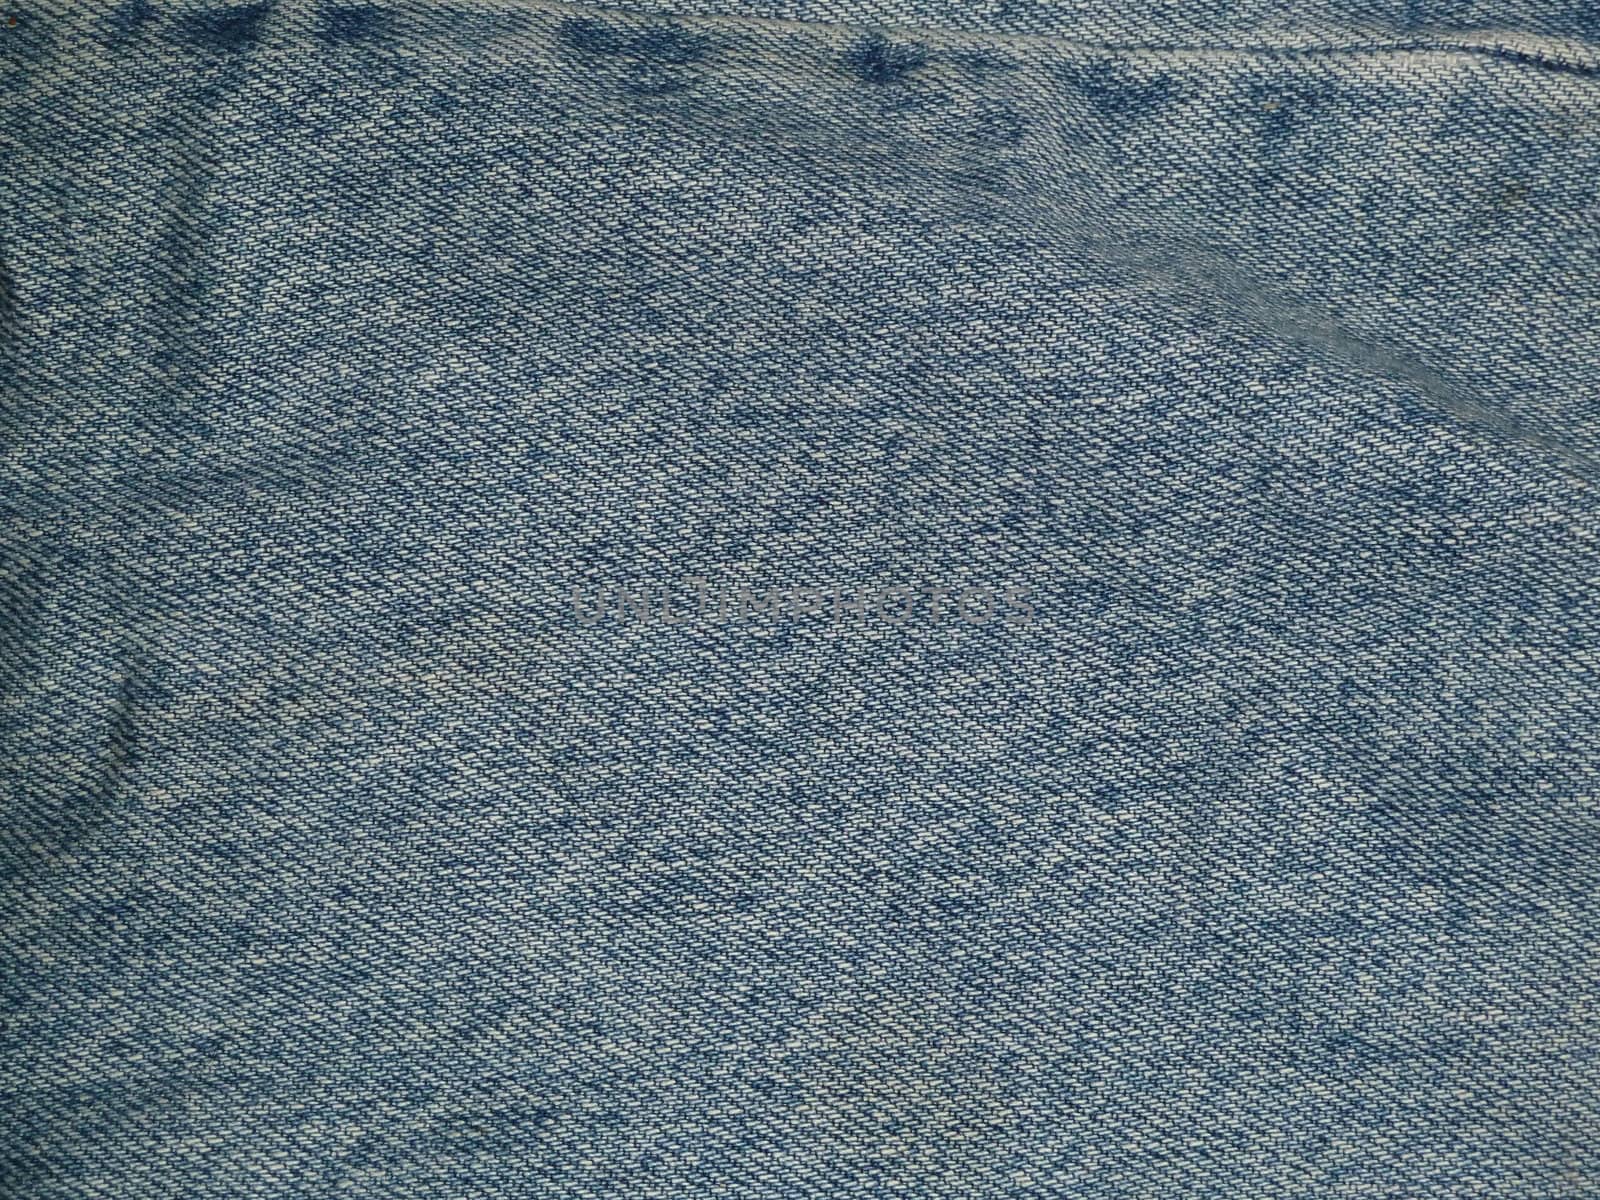 closeup of a patch of denim fabric